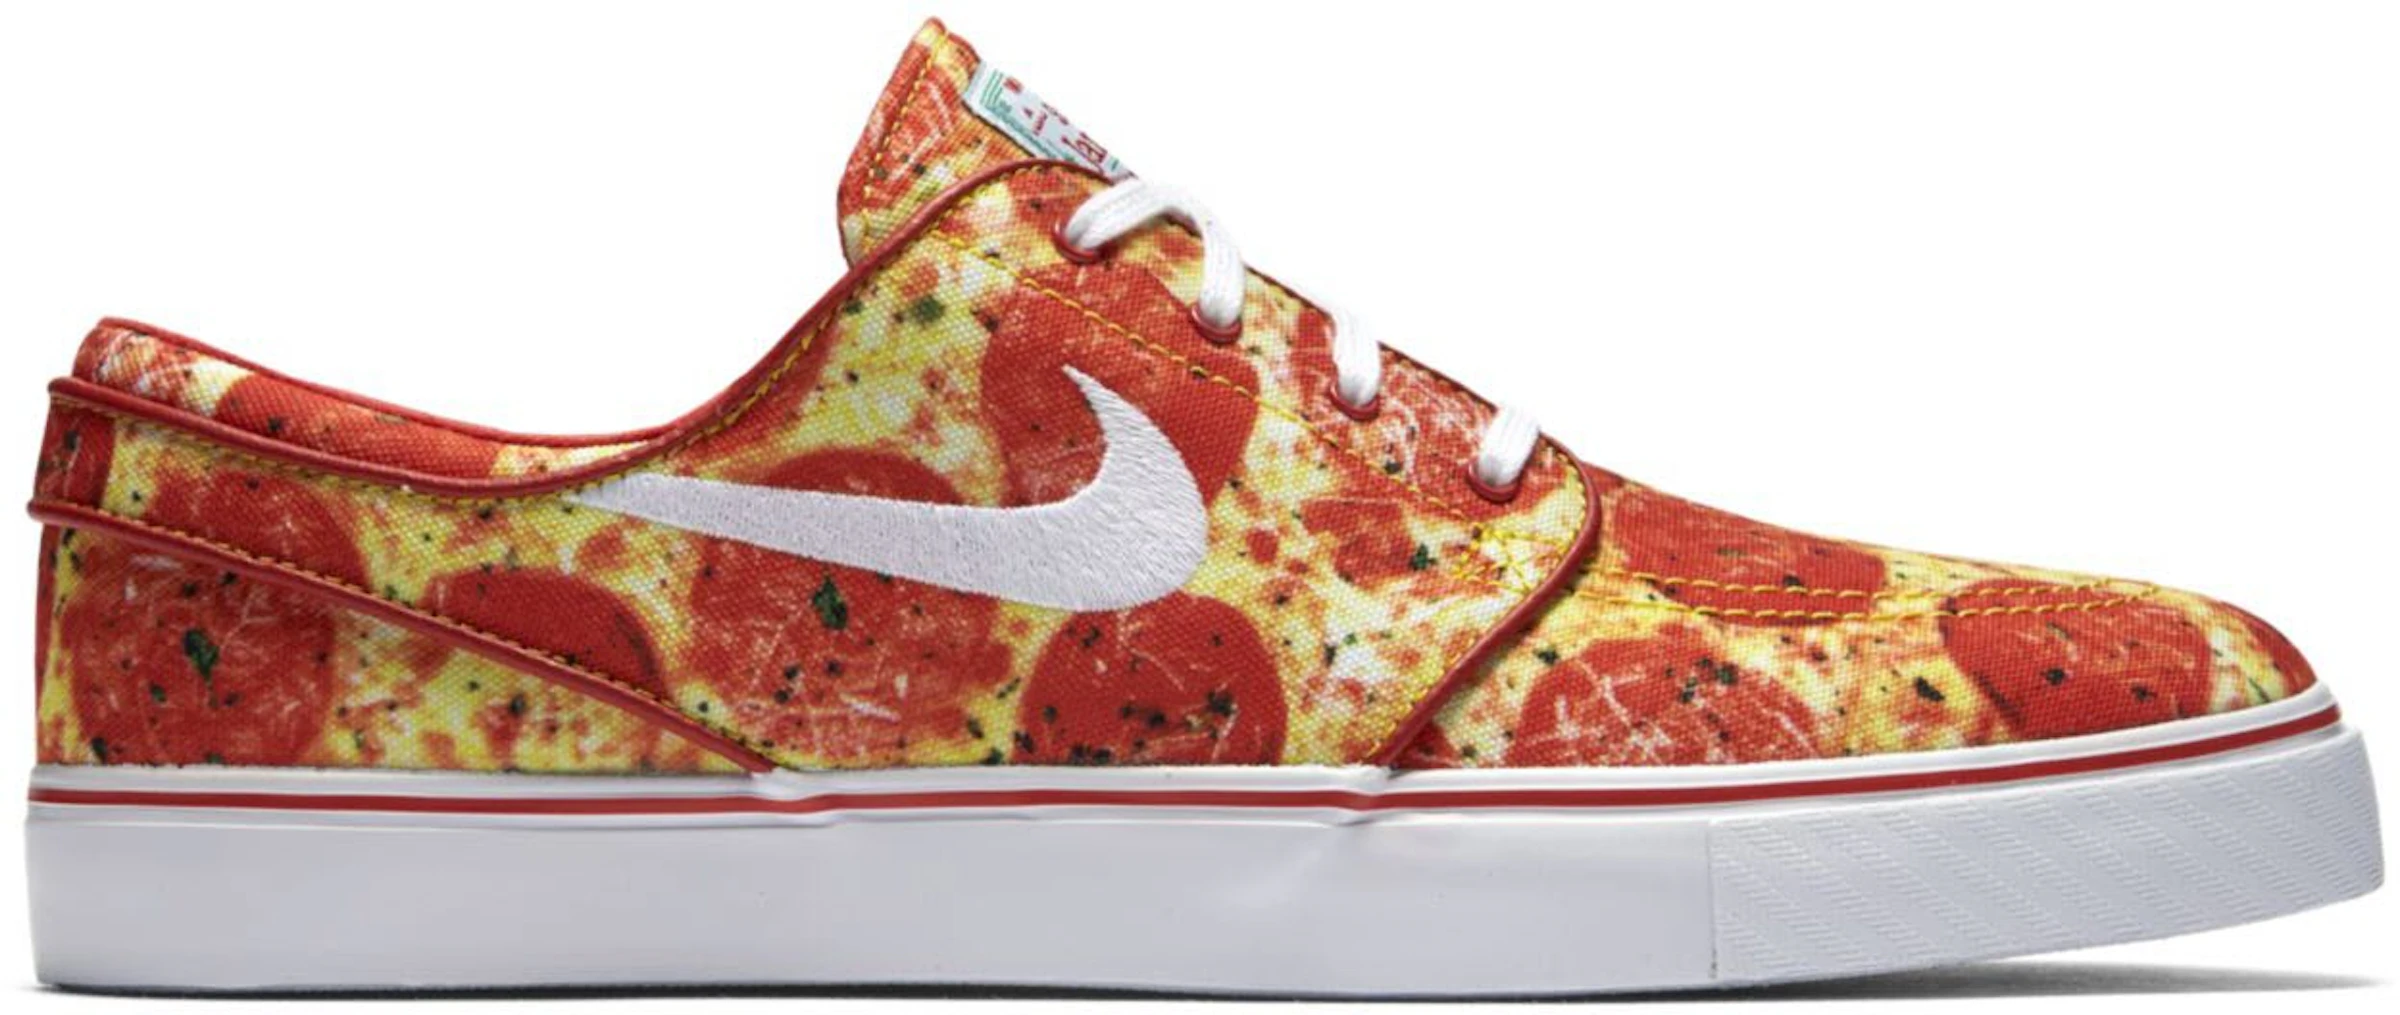 hoorbaar Berg Vesuvius Republiek Nike SB Stefan Janoski Skate Mental Pepperoni Pizza - 845711-619 - US